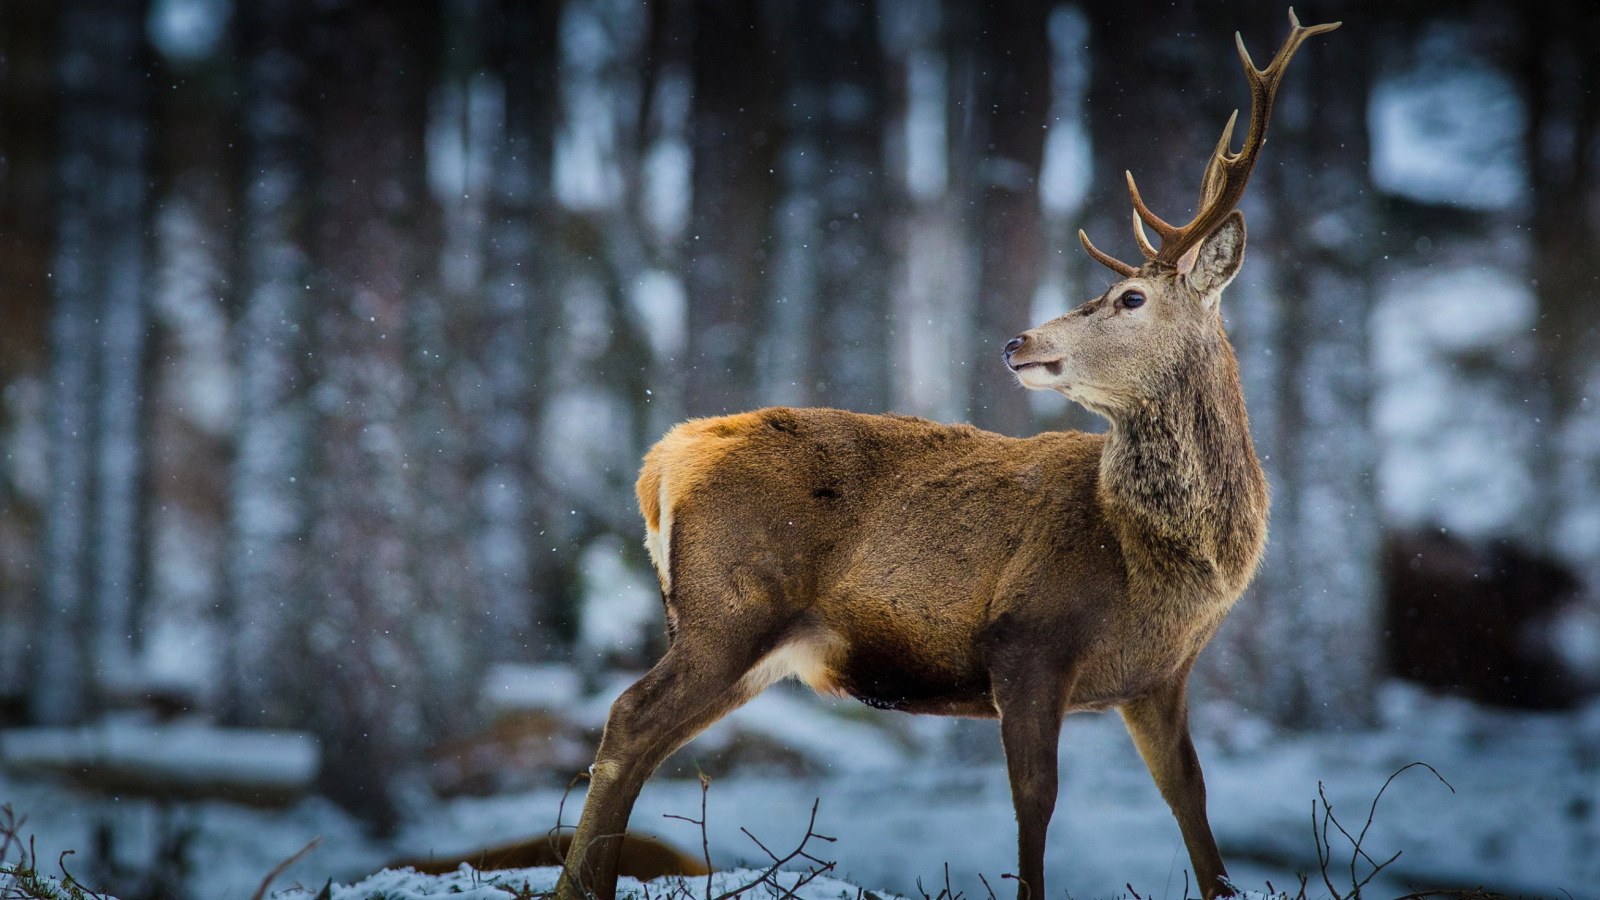 Обои Deer in Siberia 1600x900